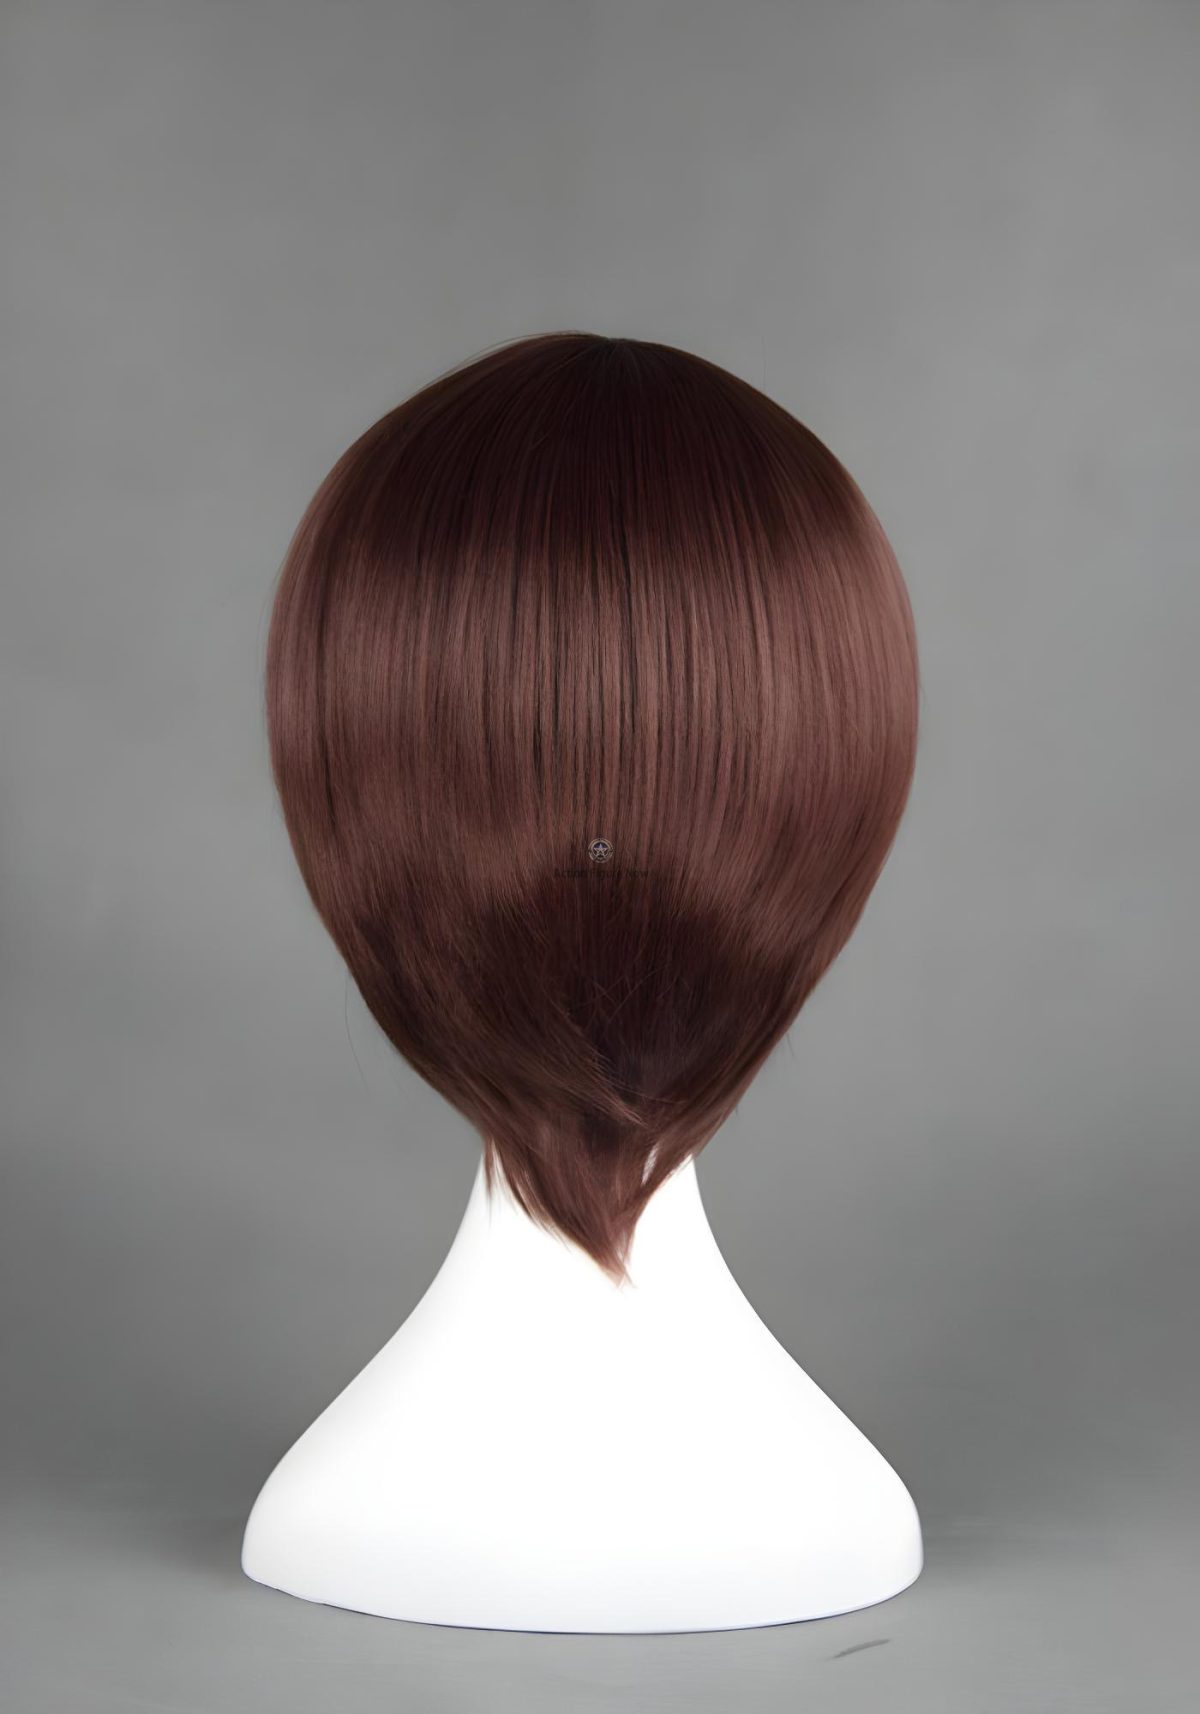 Gintama - Shimura Shinpachi Cosplay Wig